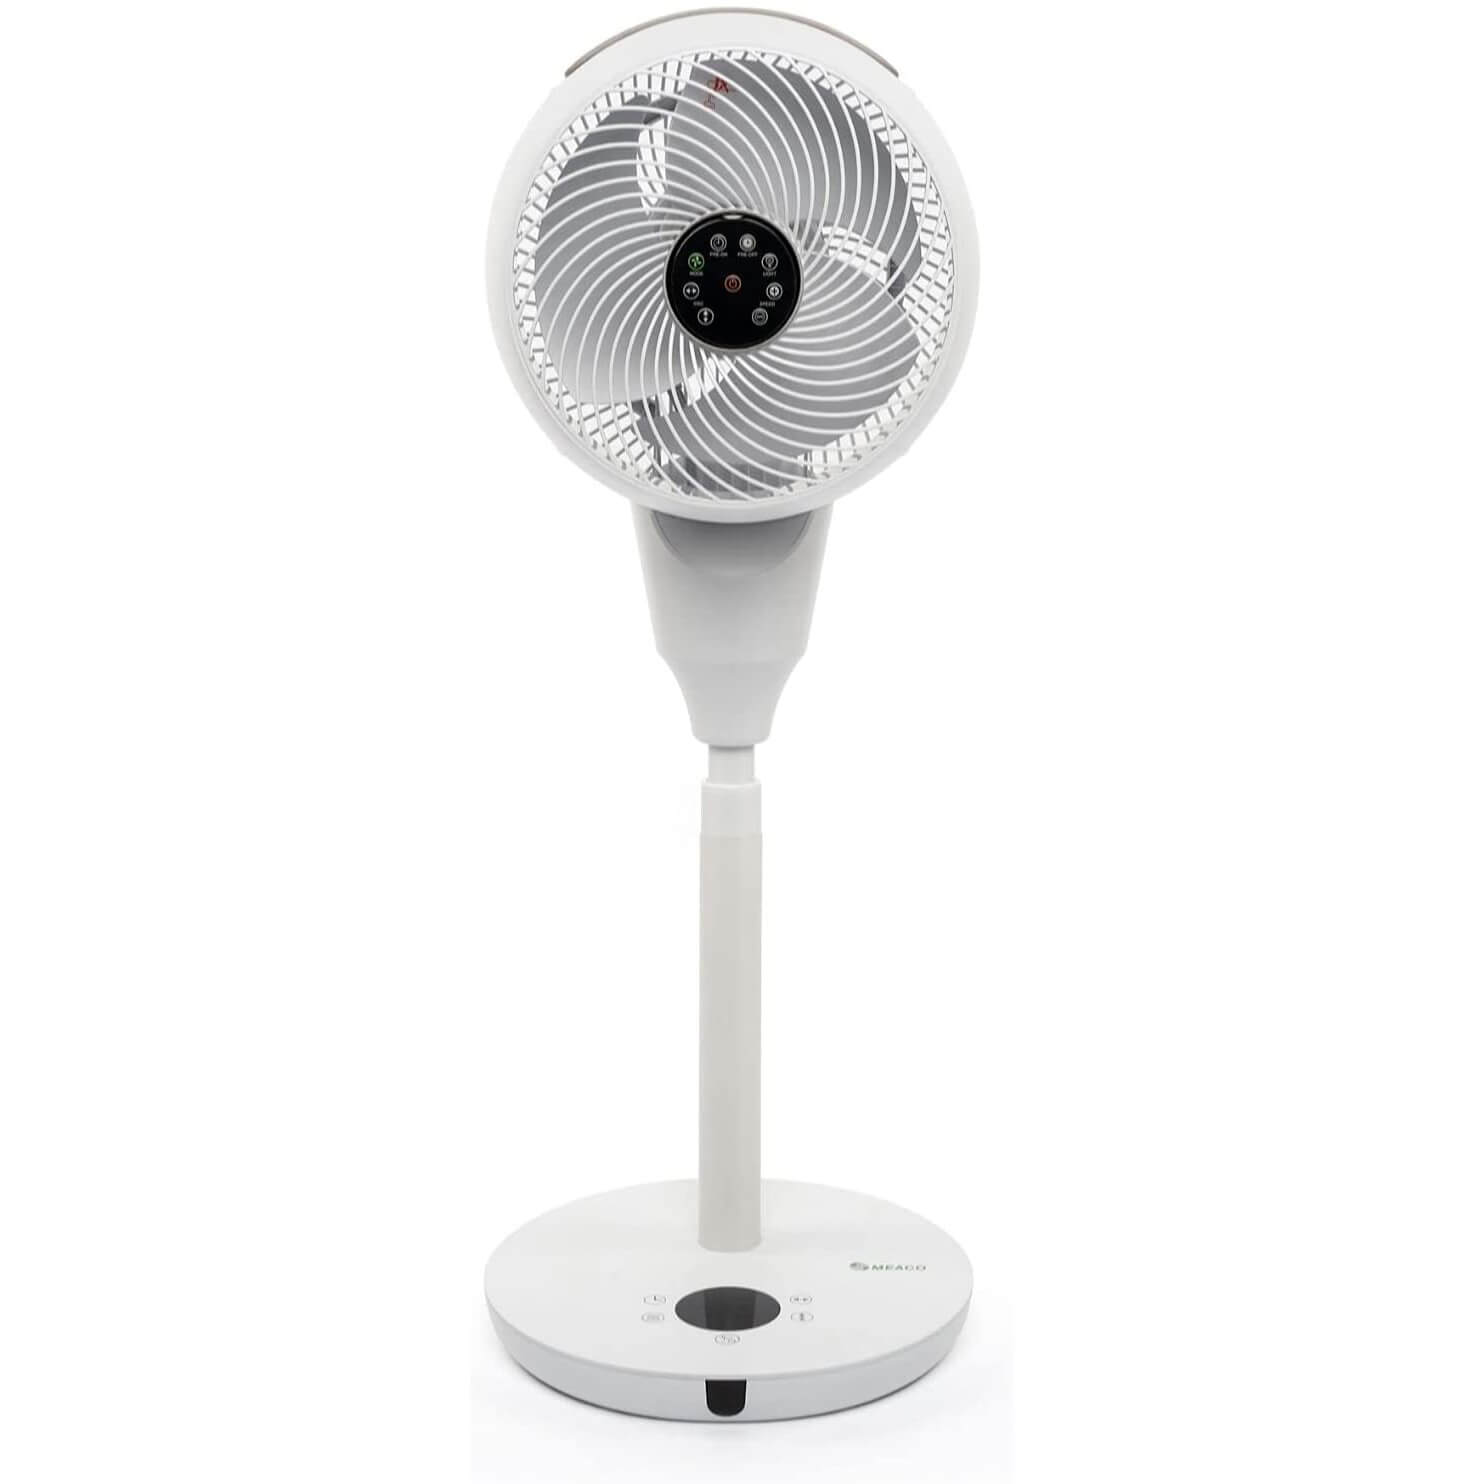 Meacofan 1056P Cooling Pedestal Fan